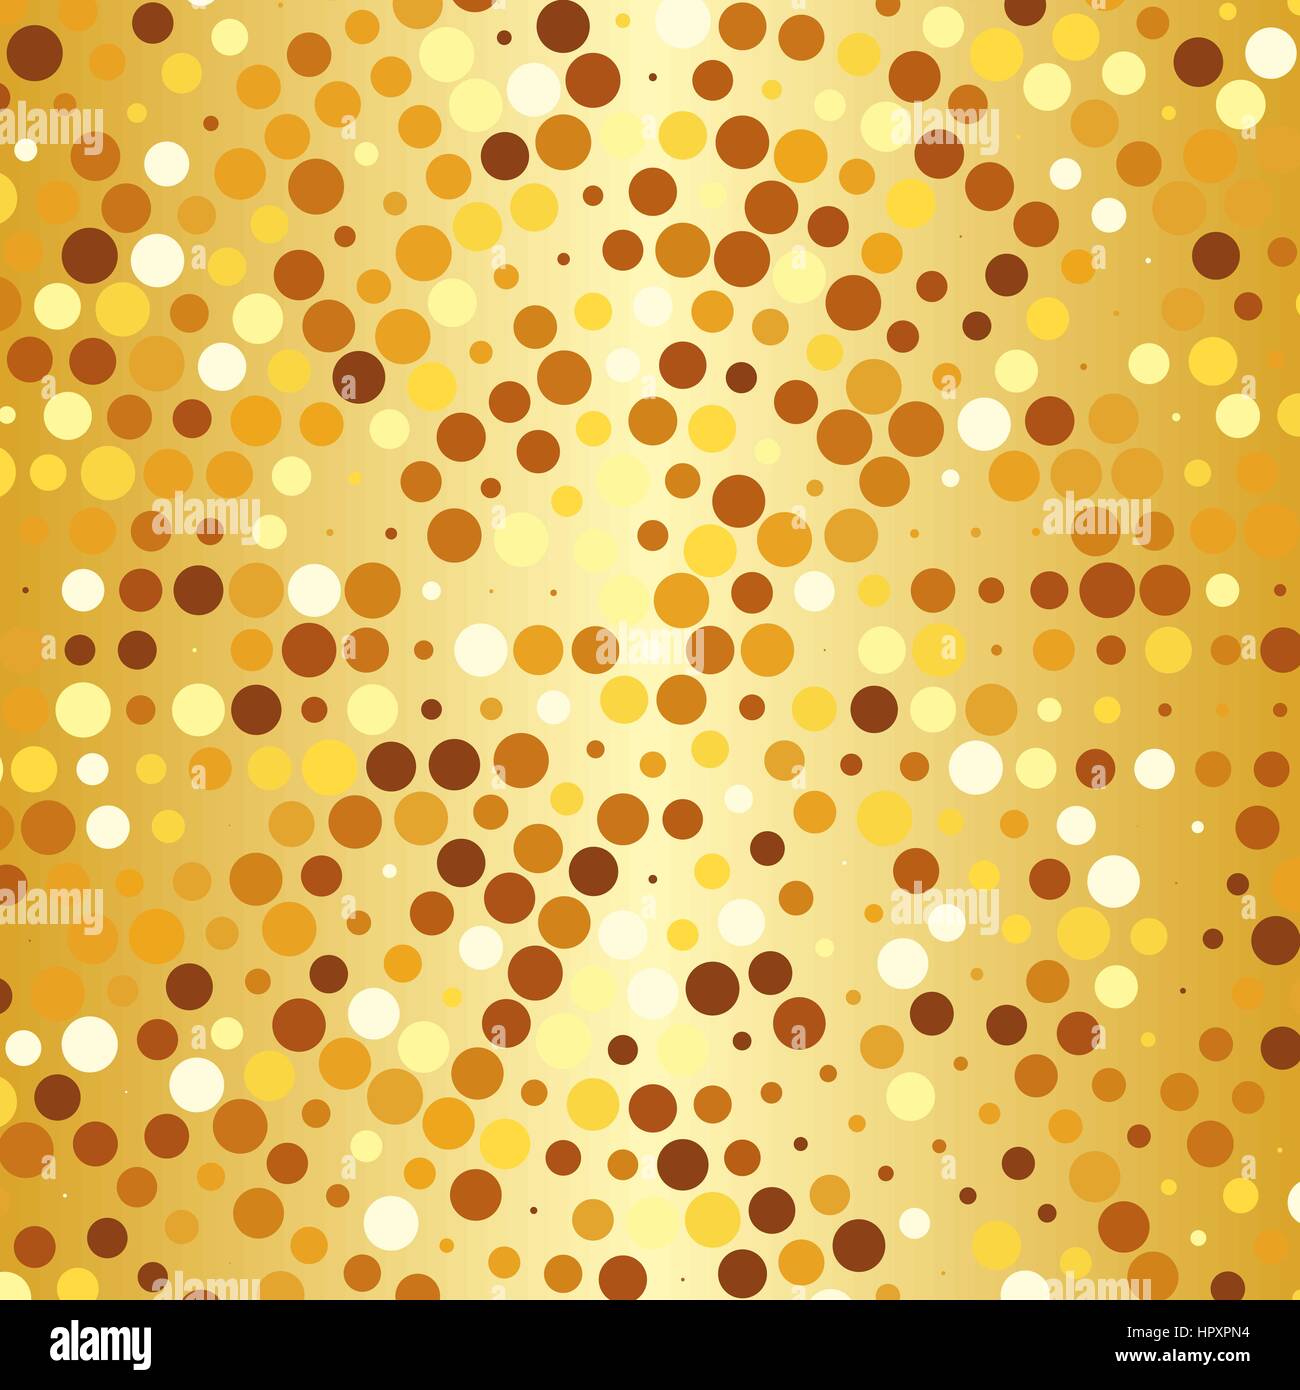 Abstract round golden halftone pattern puntiforme come sfondo per il vostro design Illustrazione Vettoriale